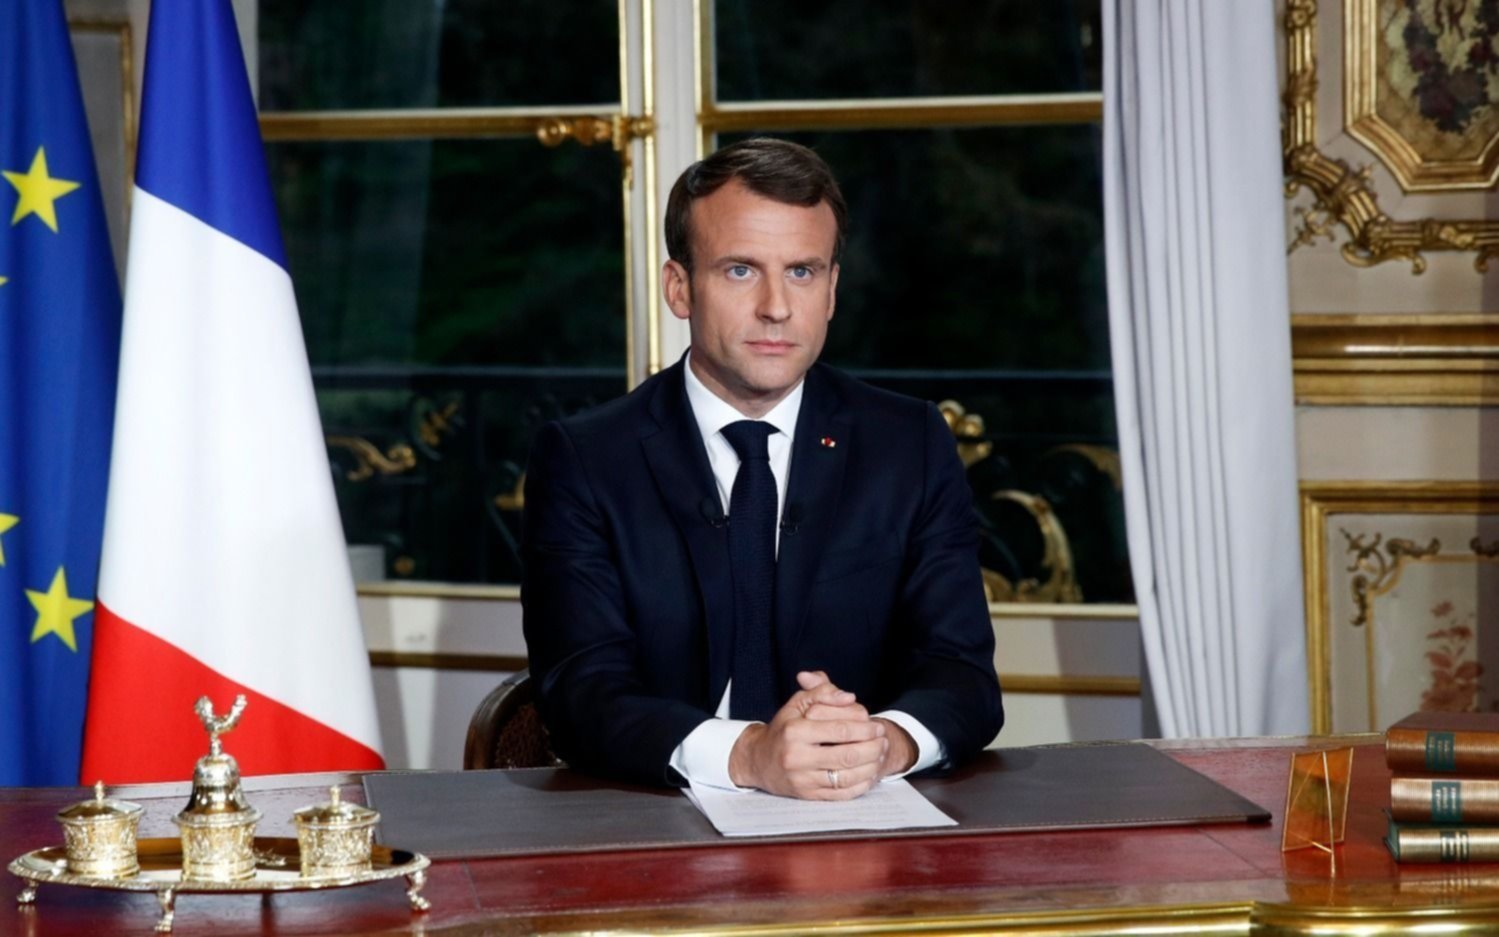 Macron cambia de equipo para dar paso a un “nuevo rumbo” político